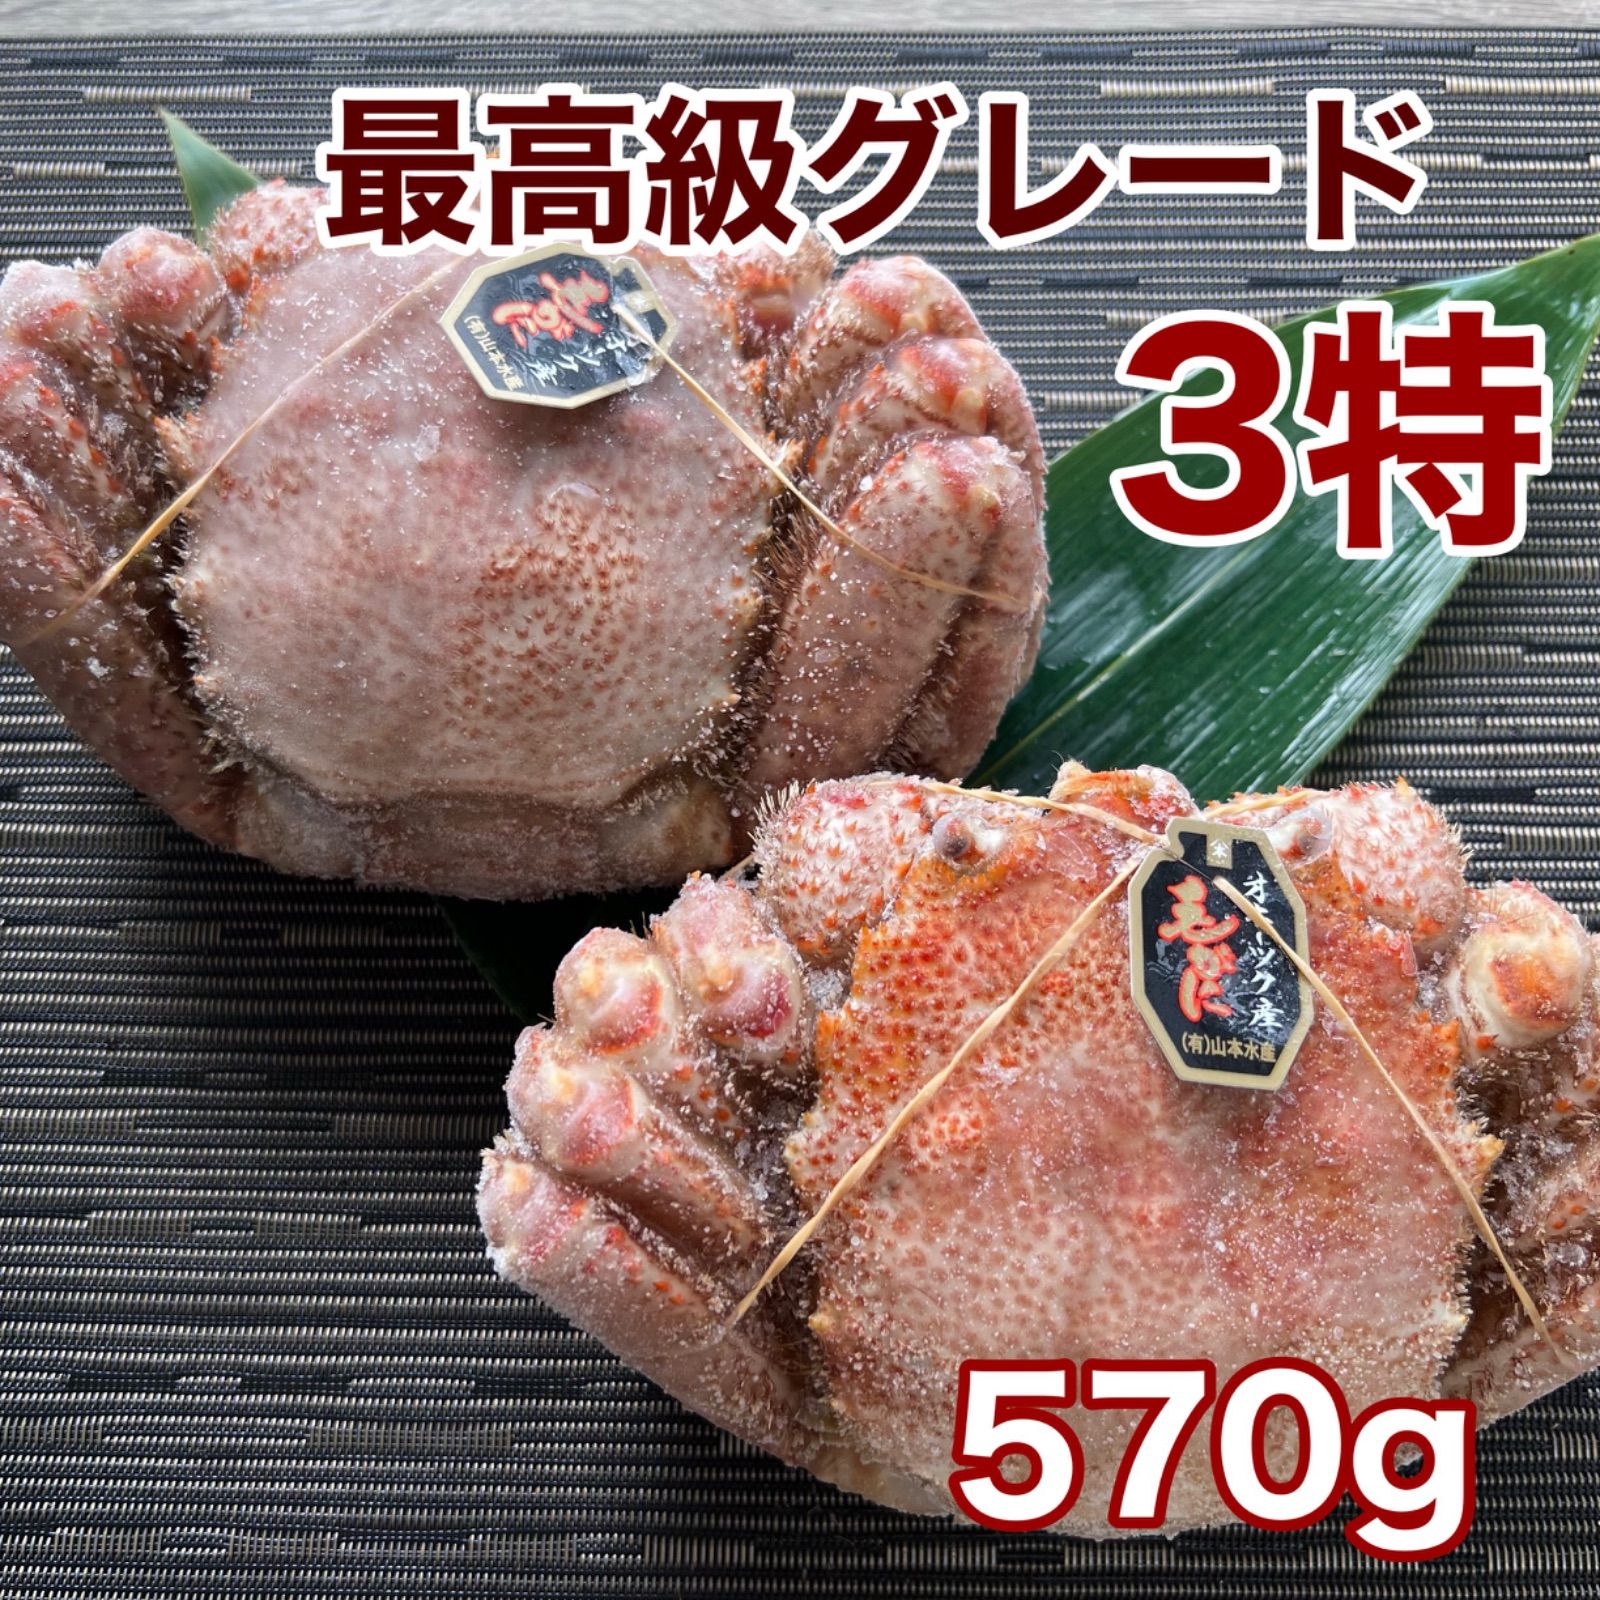 最高級3特ランク北海道オホーツク産冷凍毛蟹570g2尾14900円-0